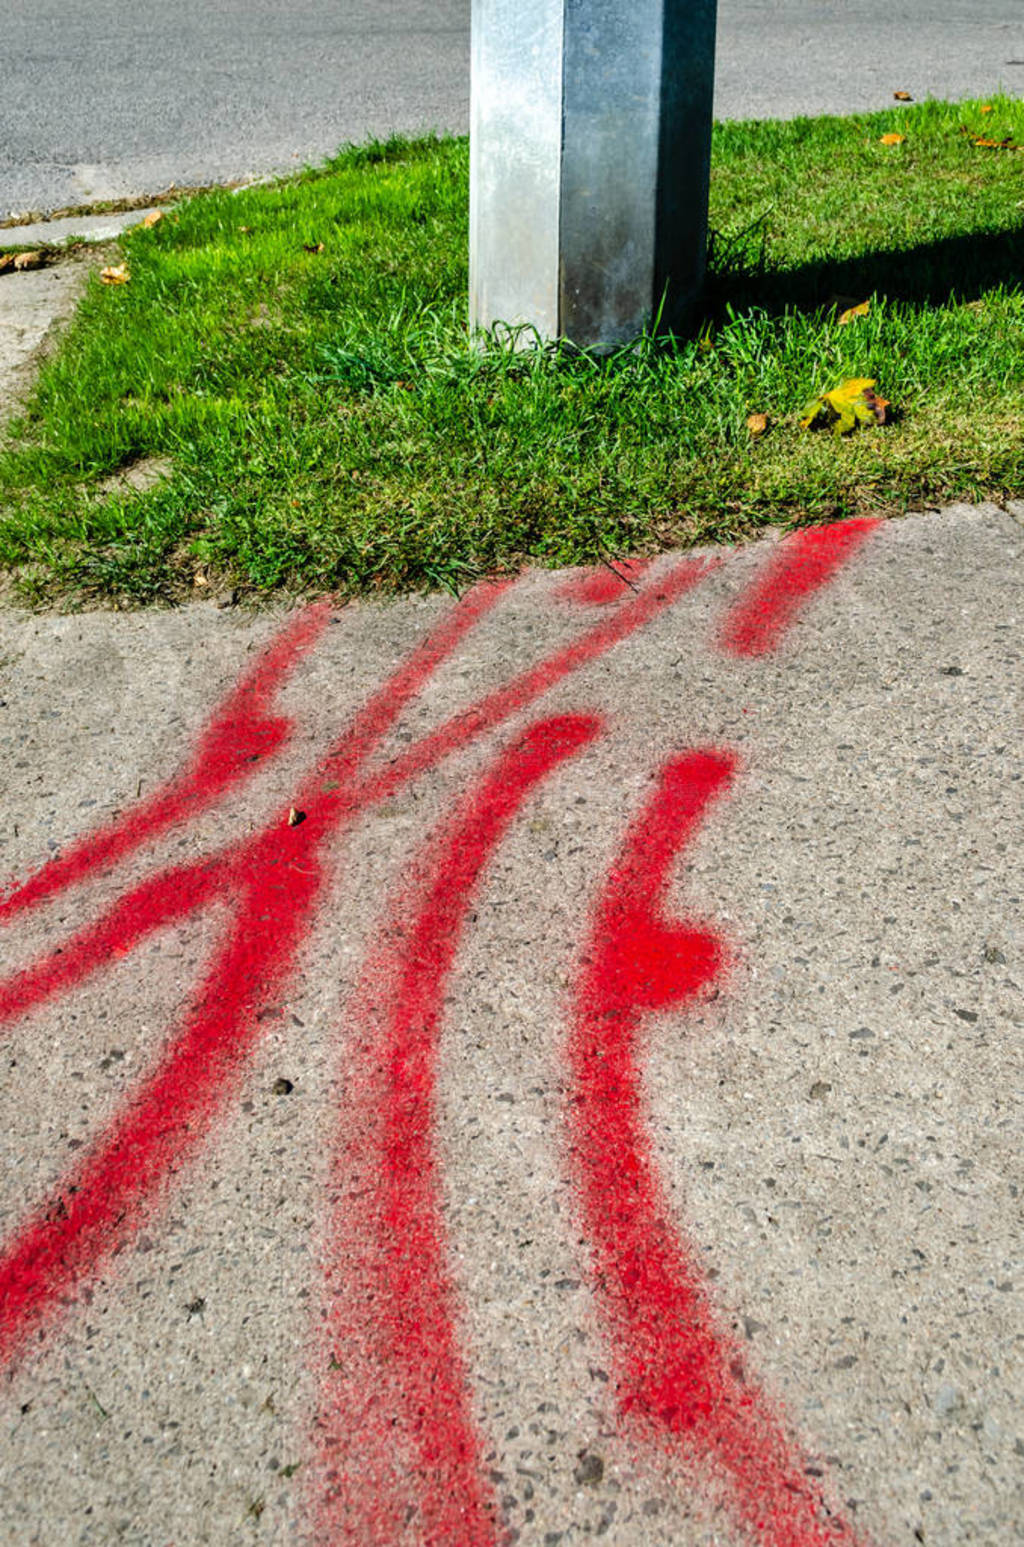 Pattern of hydro line markings on a sidewalk